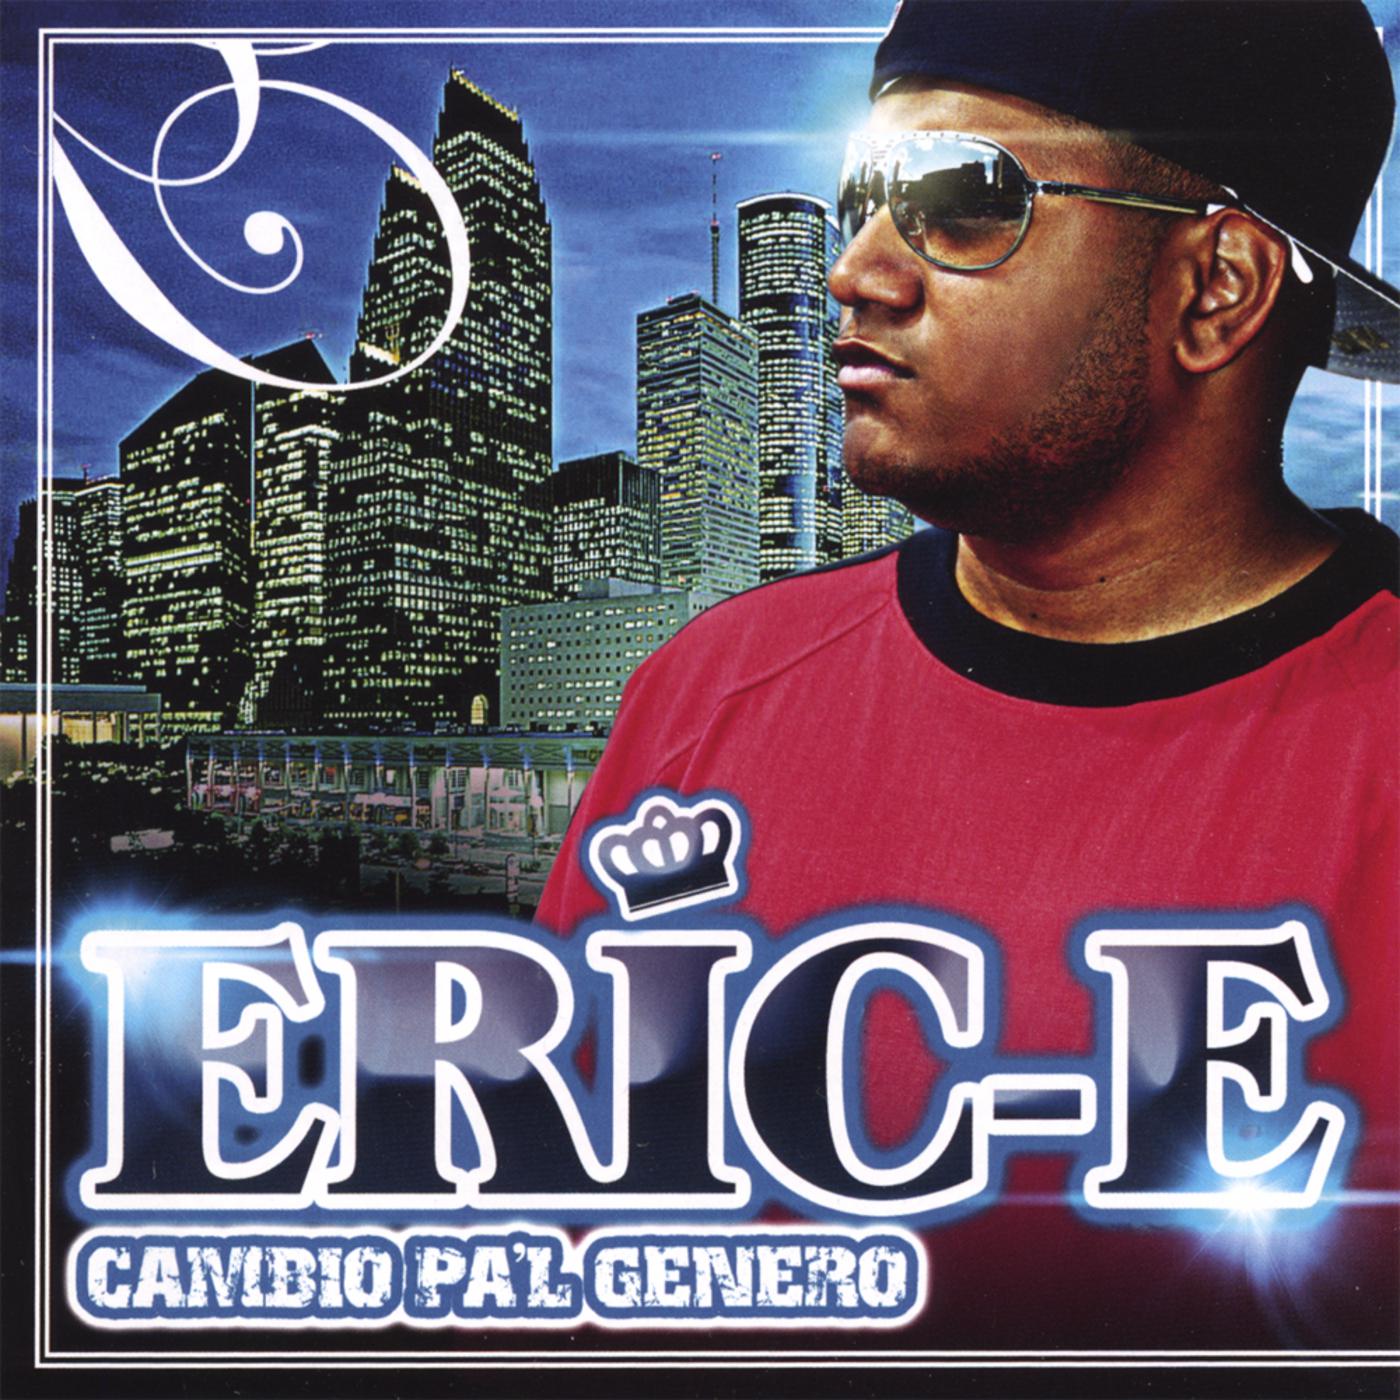 Eric-E - He's #1